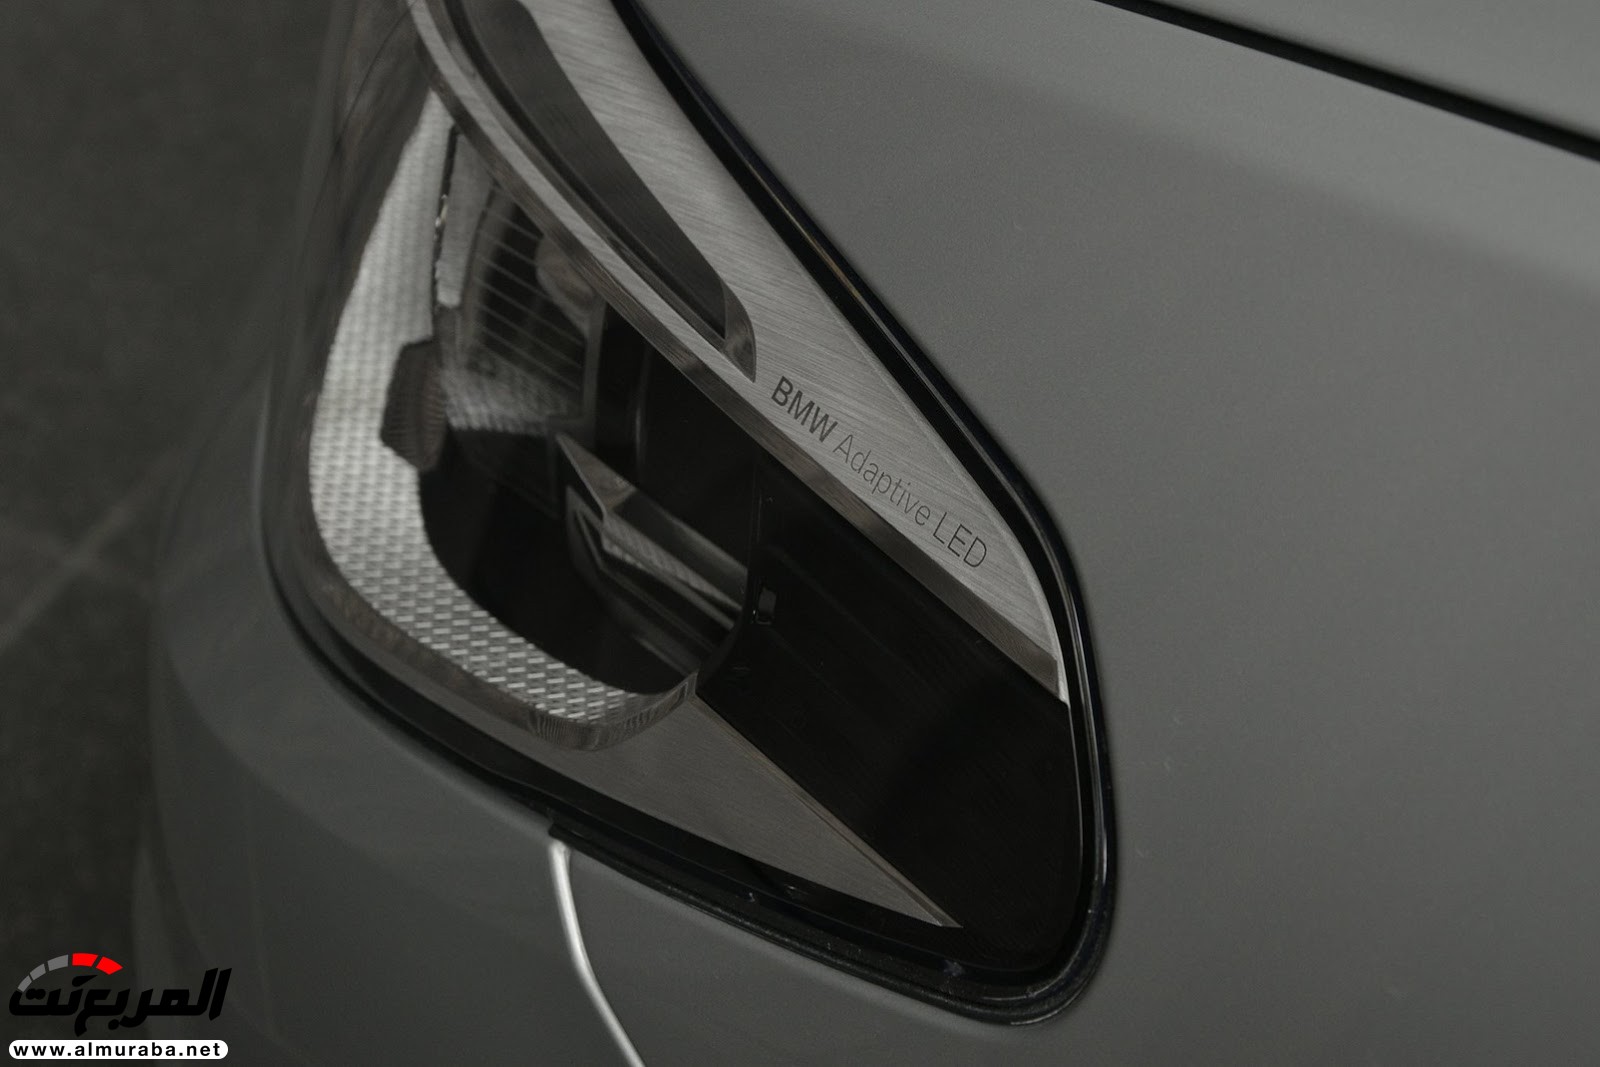 "بي إم دبليو" 540i الجديدة كلياً بتعديلات سبورت لاين معروضة بأبو ظبي BMW 2